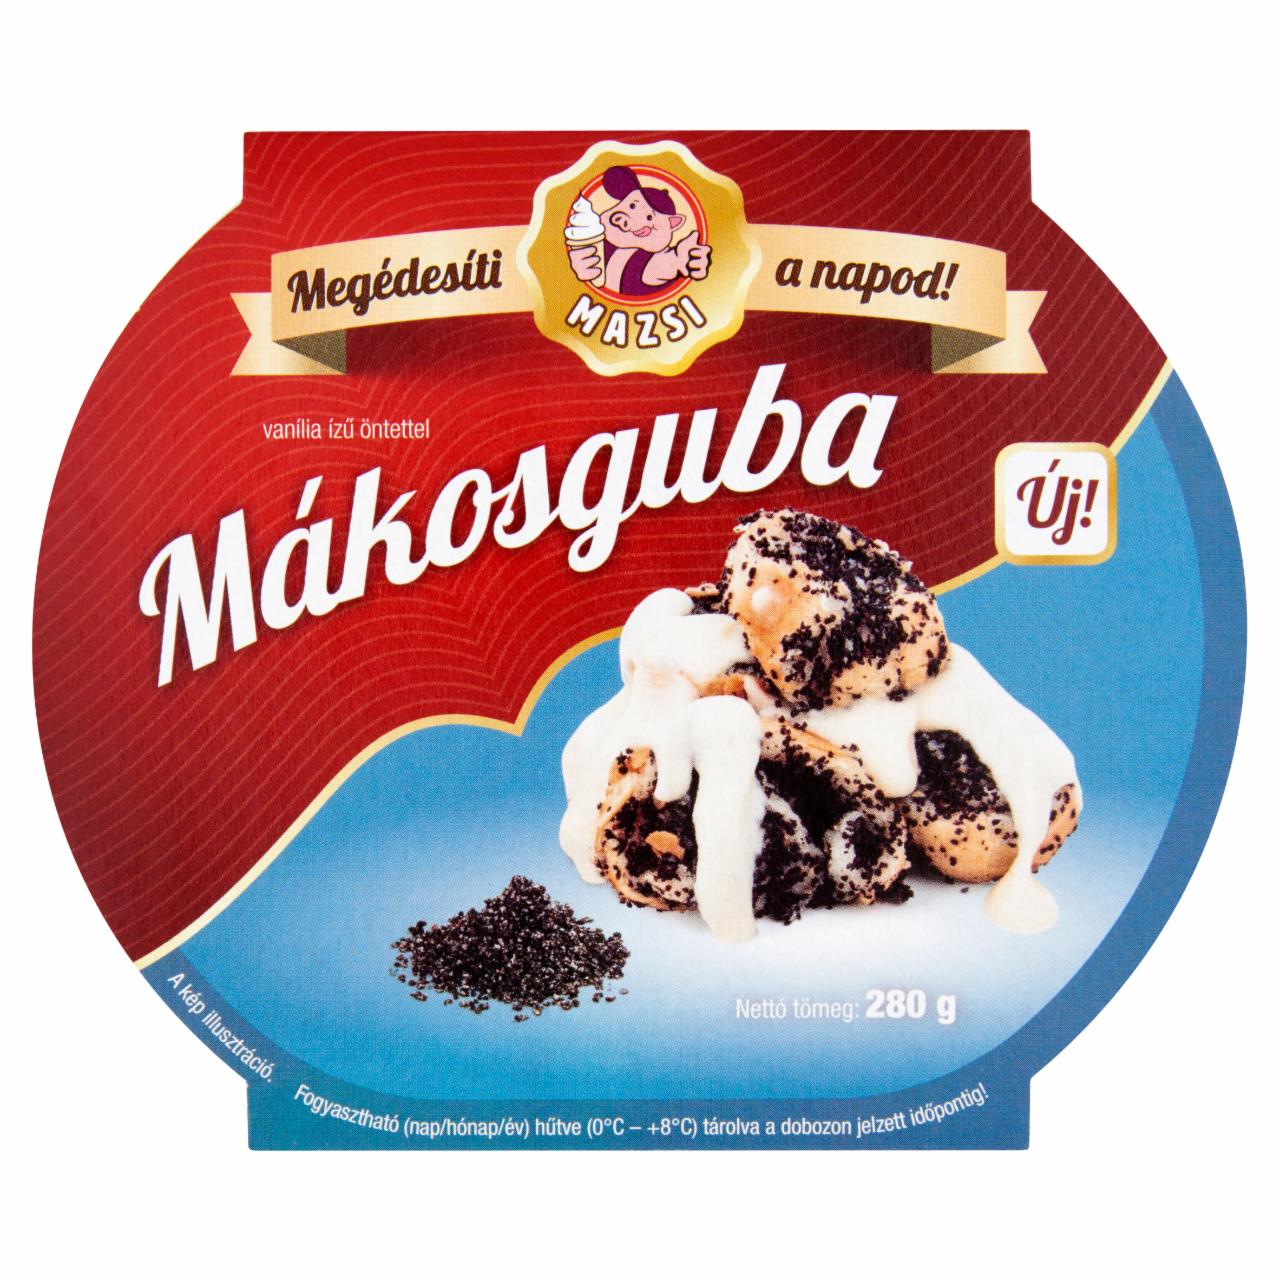 Képek - Mazsi mákosguba vanília ízű öntettel 280 g